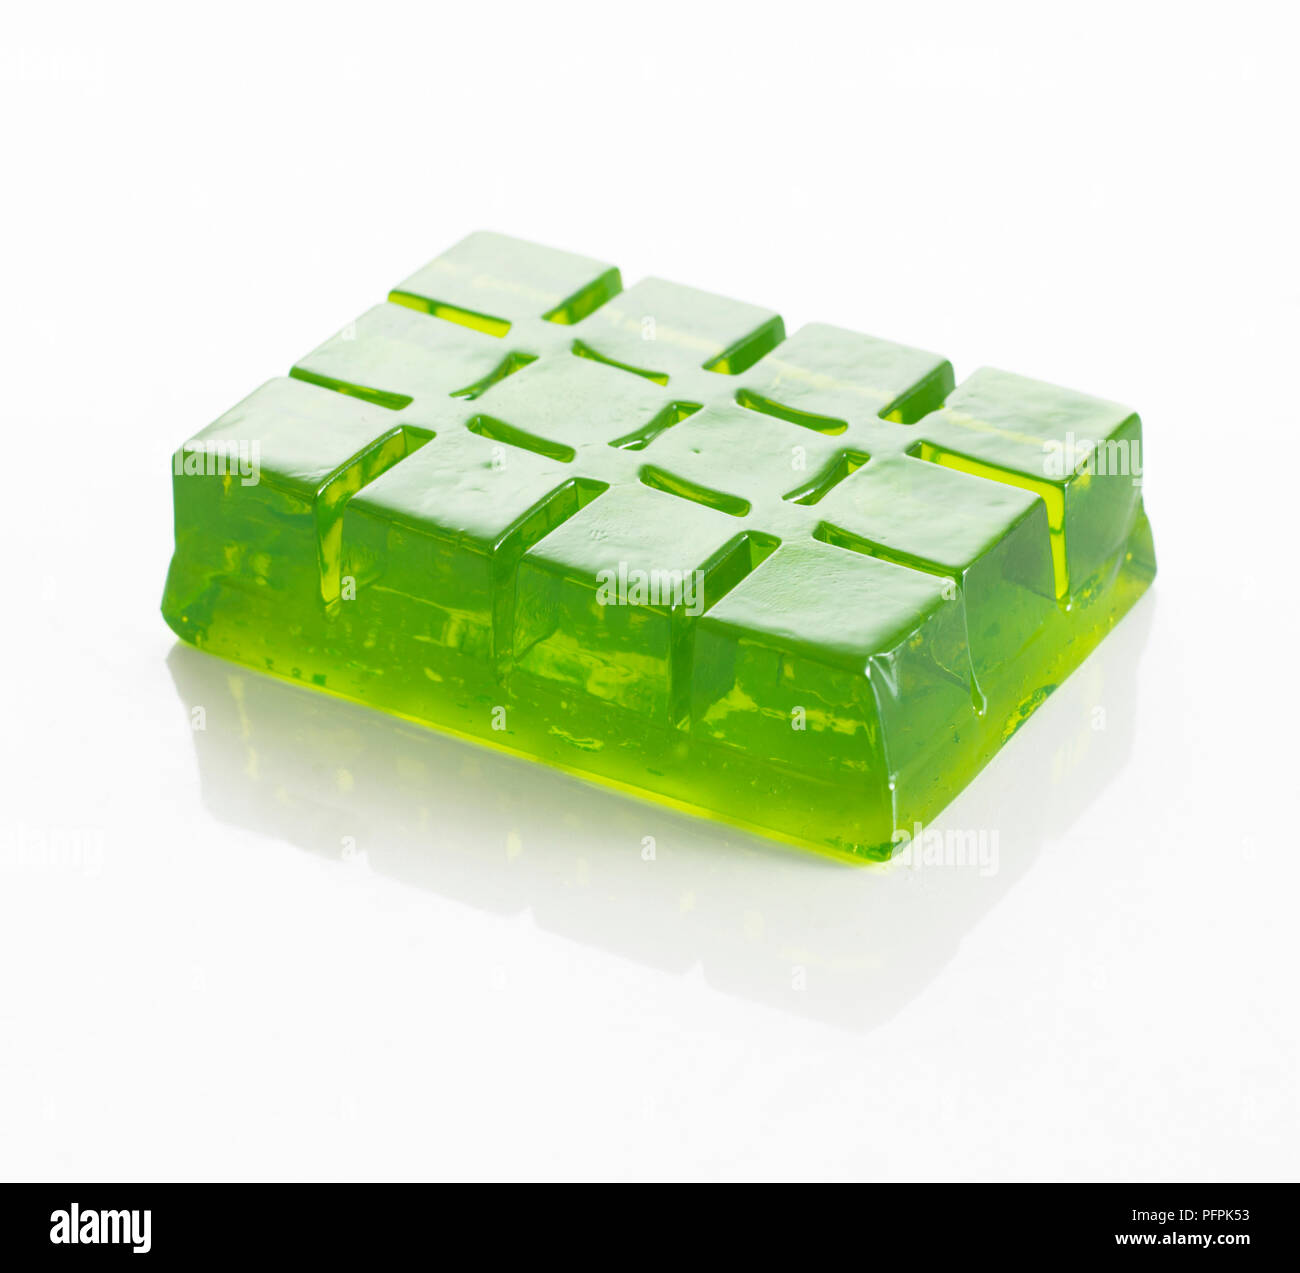 Jeu de bloc green jelly (fait à l'aide de bac à glaçons) Banque D'Images